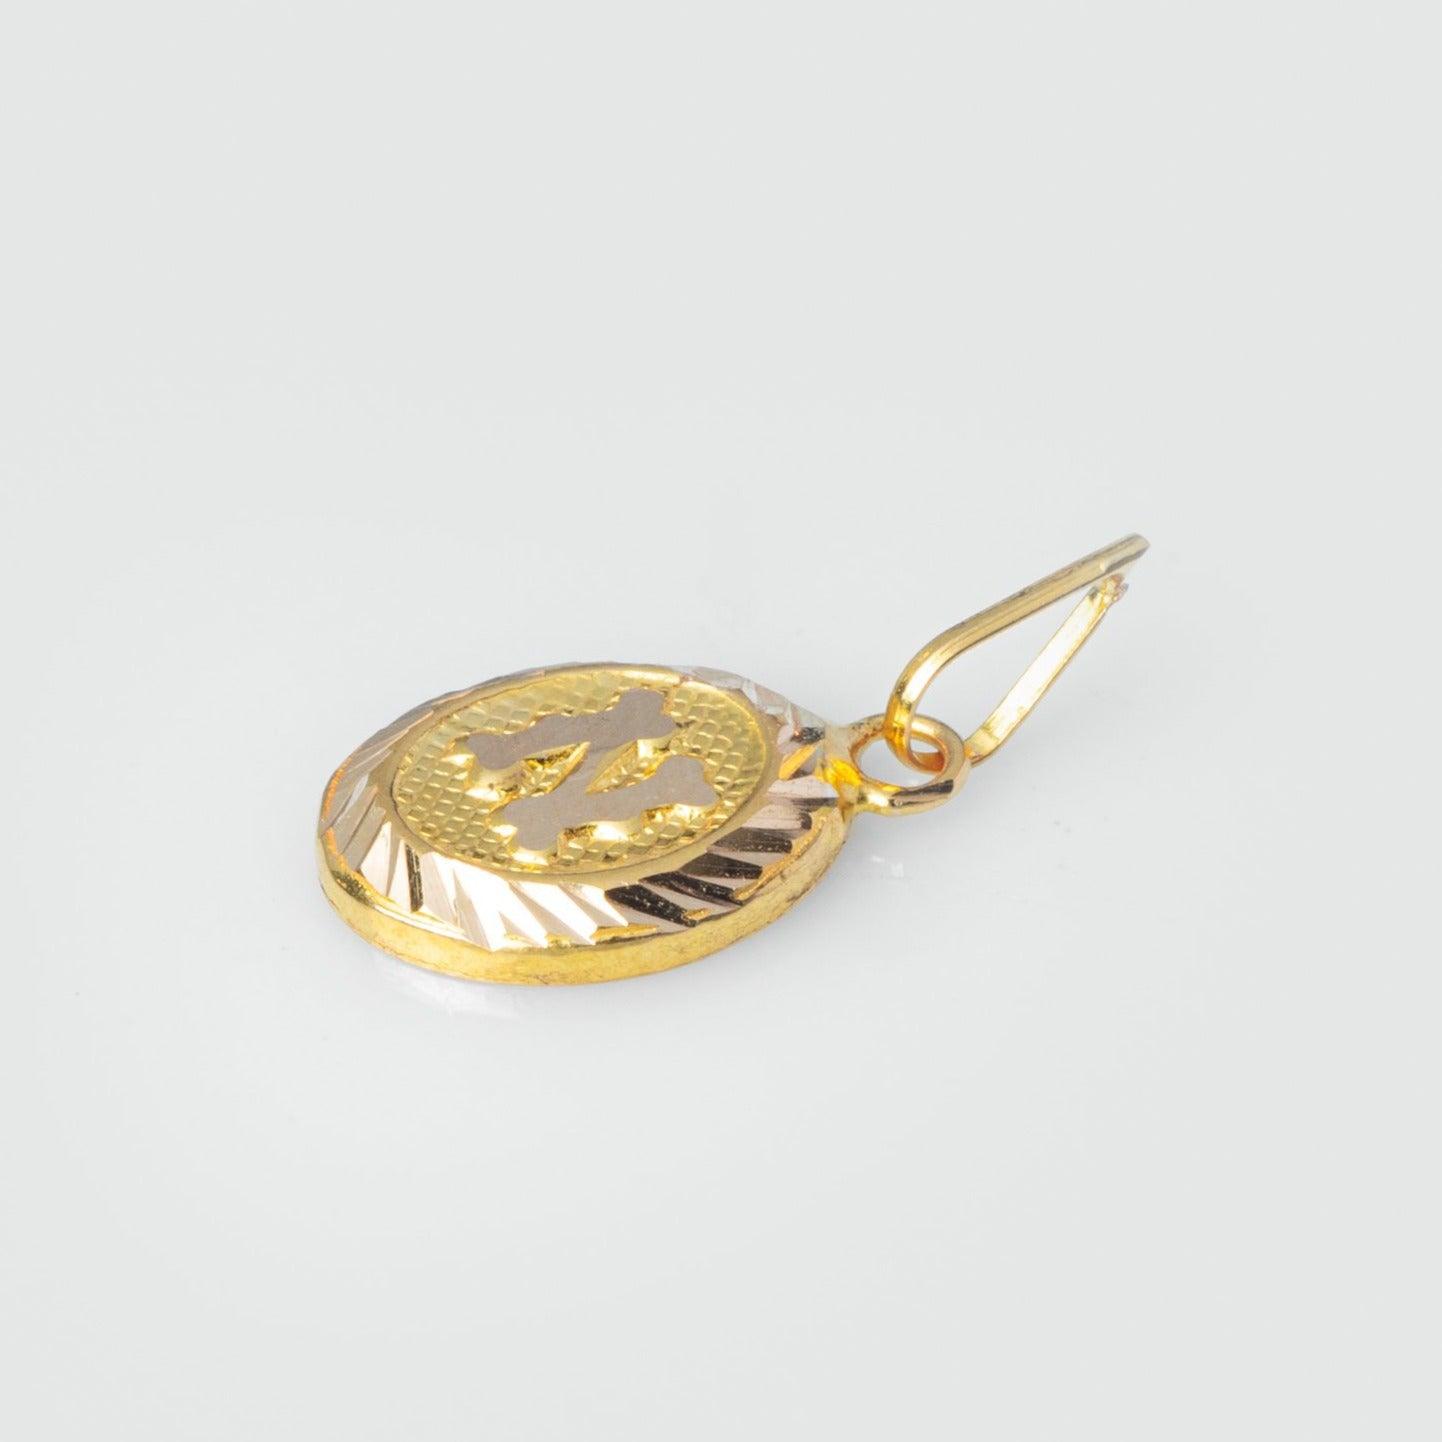 'N' 22ct Gold Initial Pendant P-7550 - Minar Jewellers